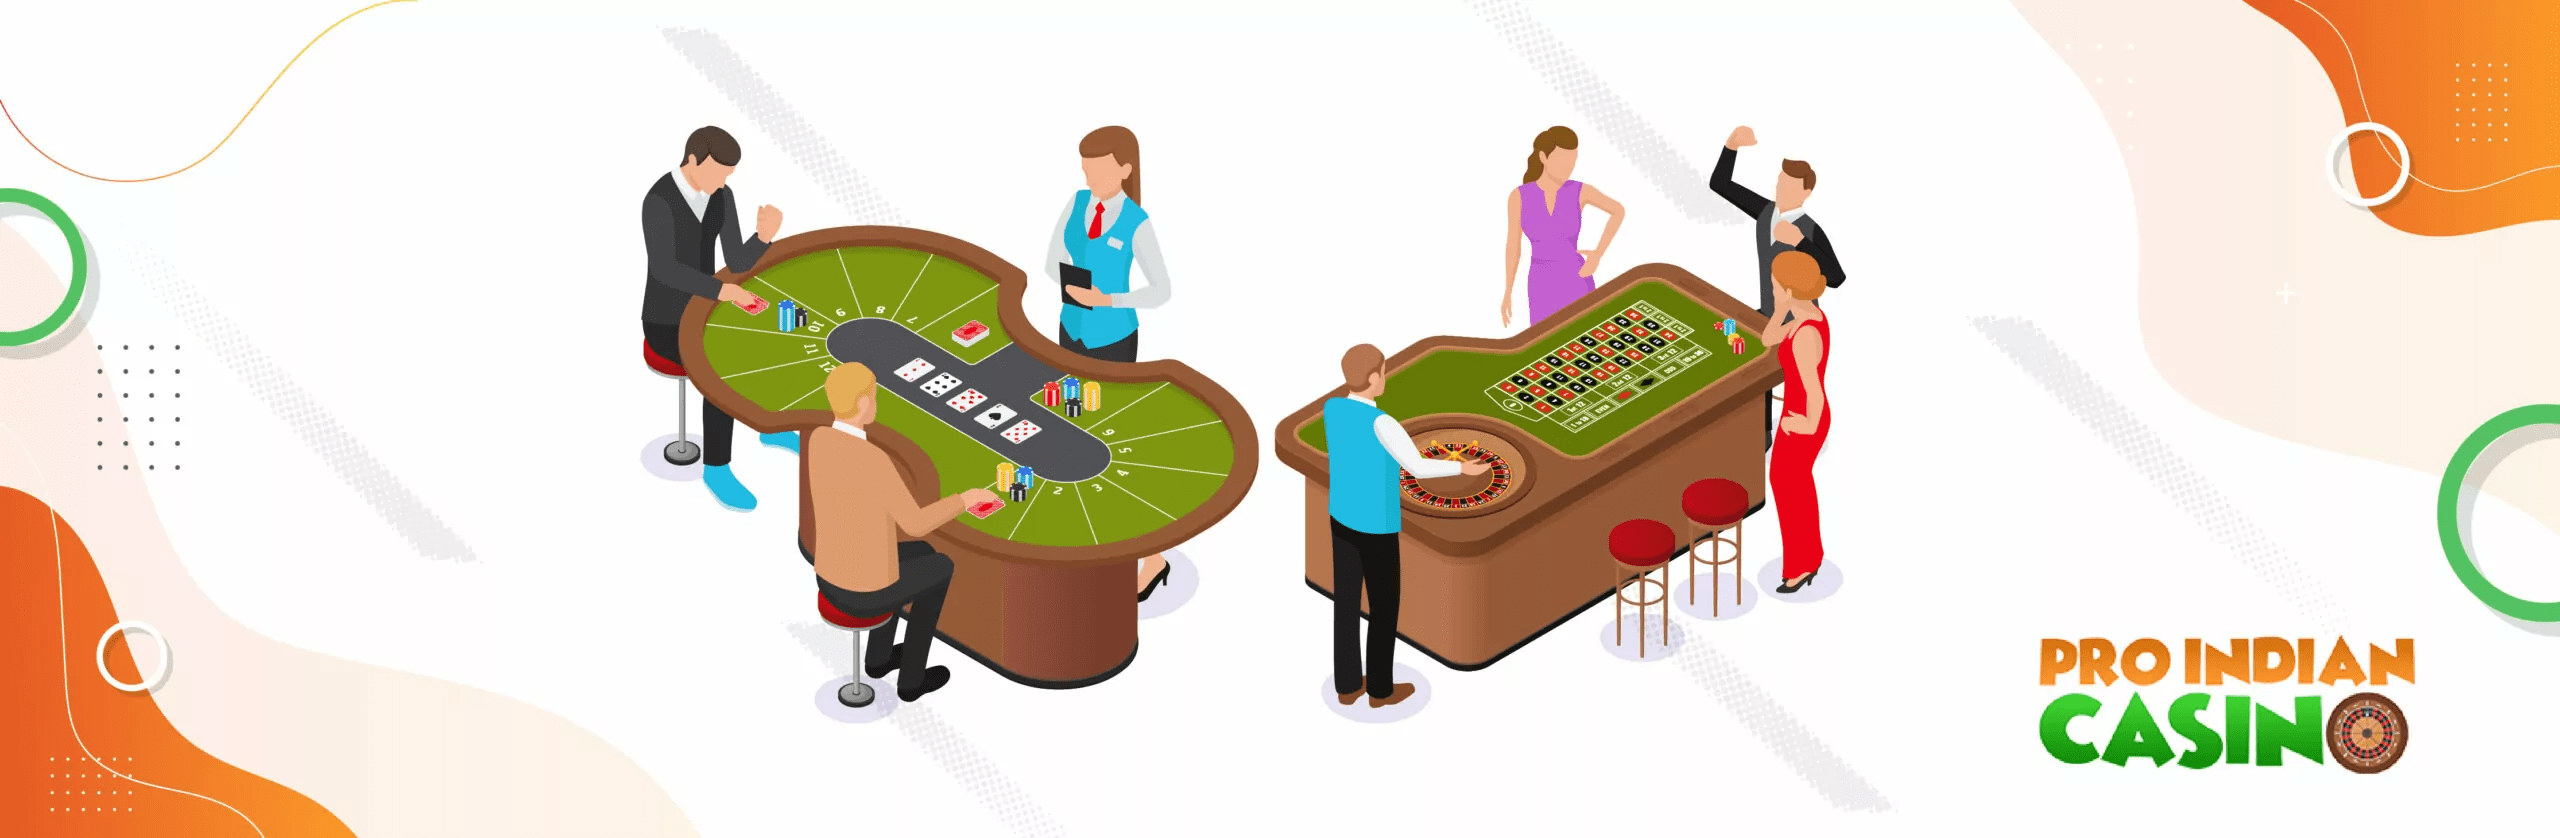 live casinos In India